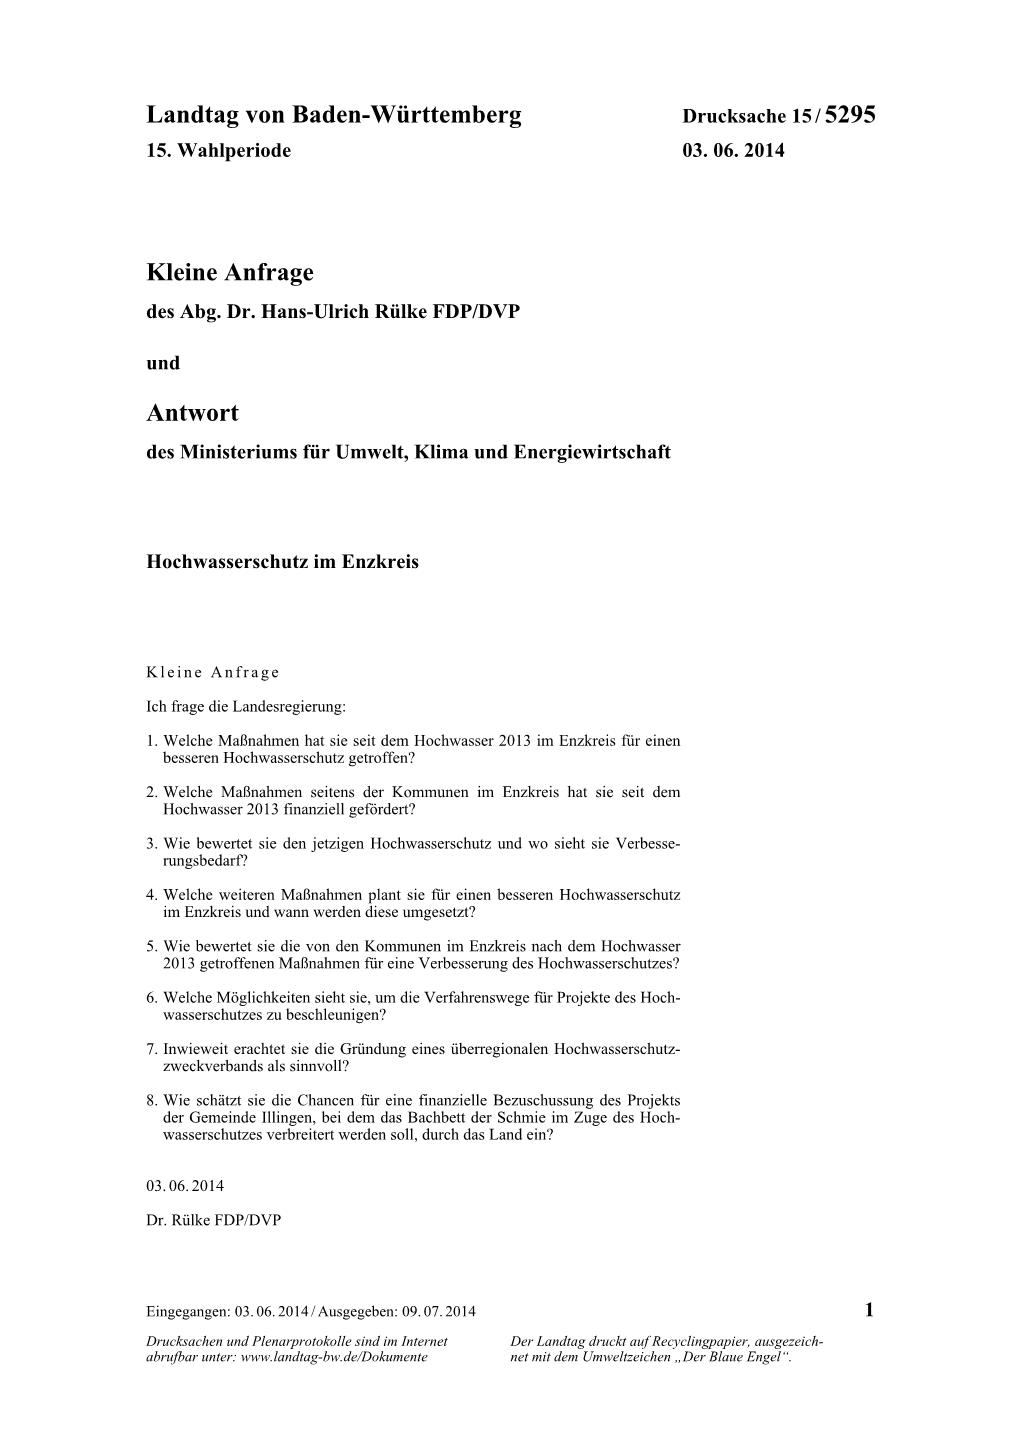 Landtag Von Baden-Württemberg Kleine Anfrage Antwort